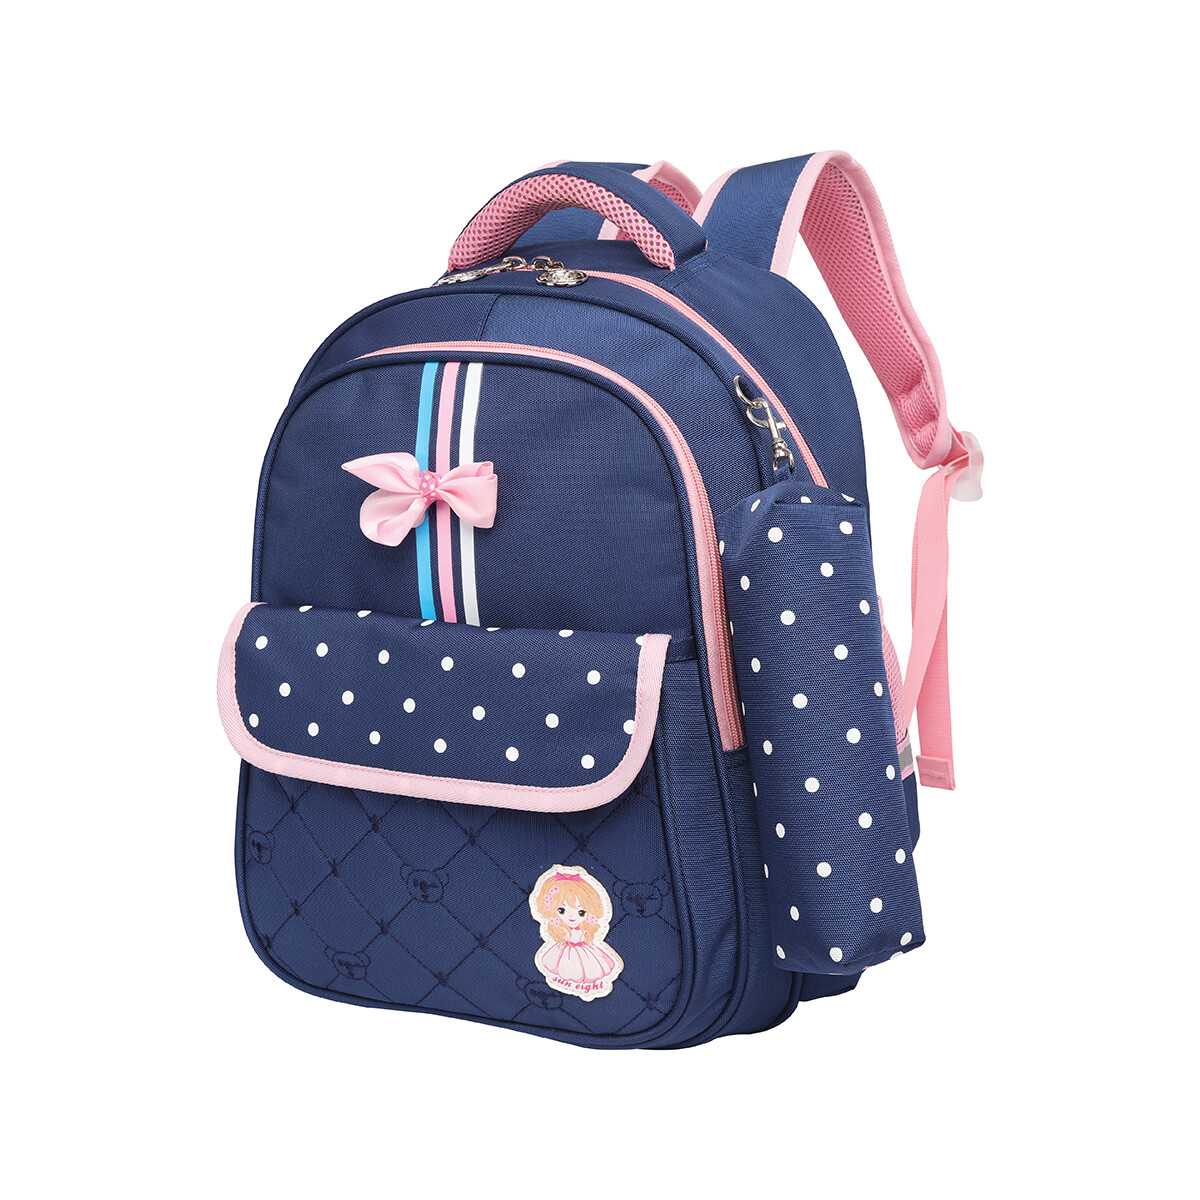 Backpack for Kids (Nursery Grade)